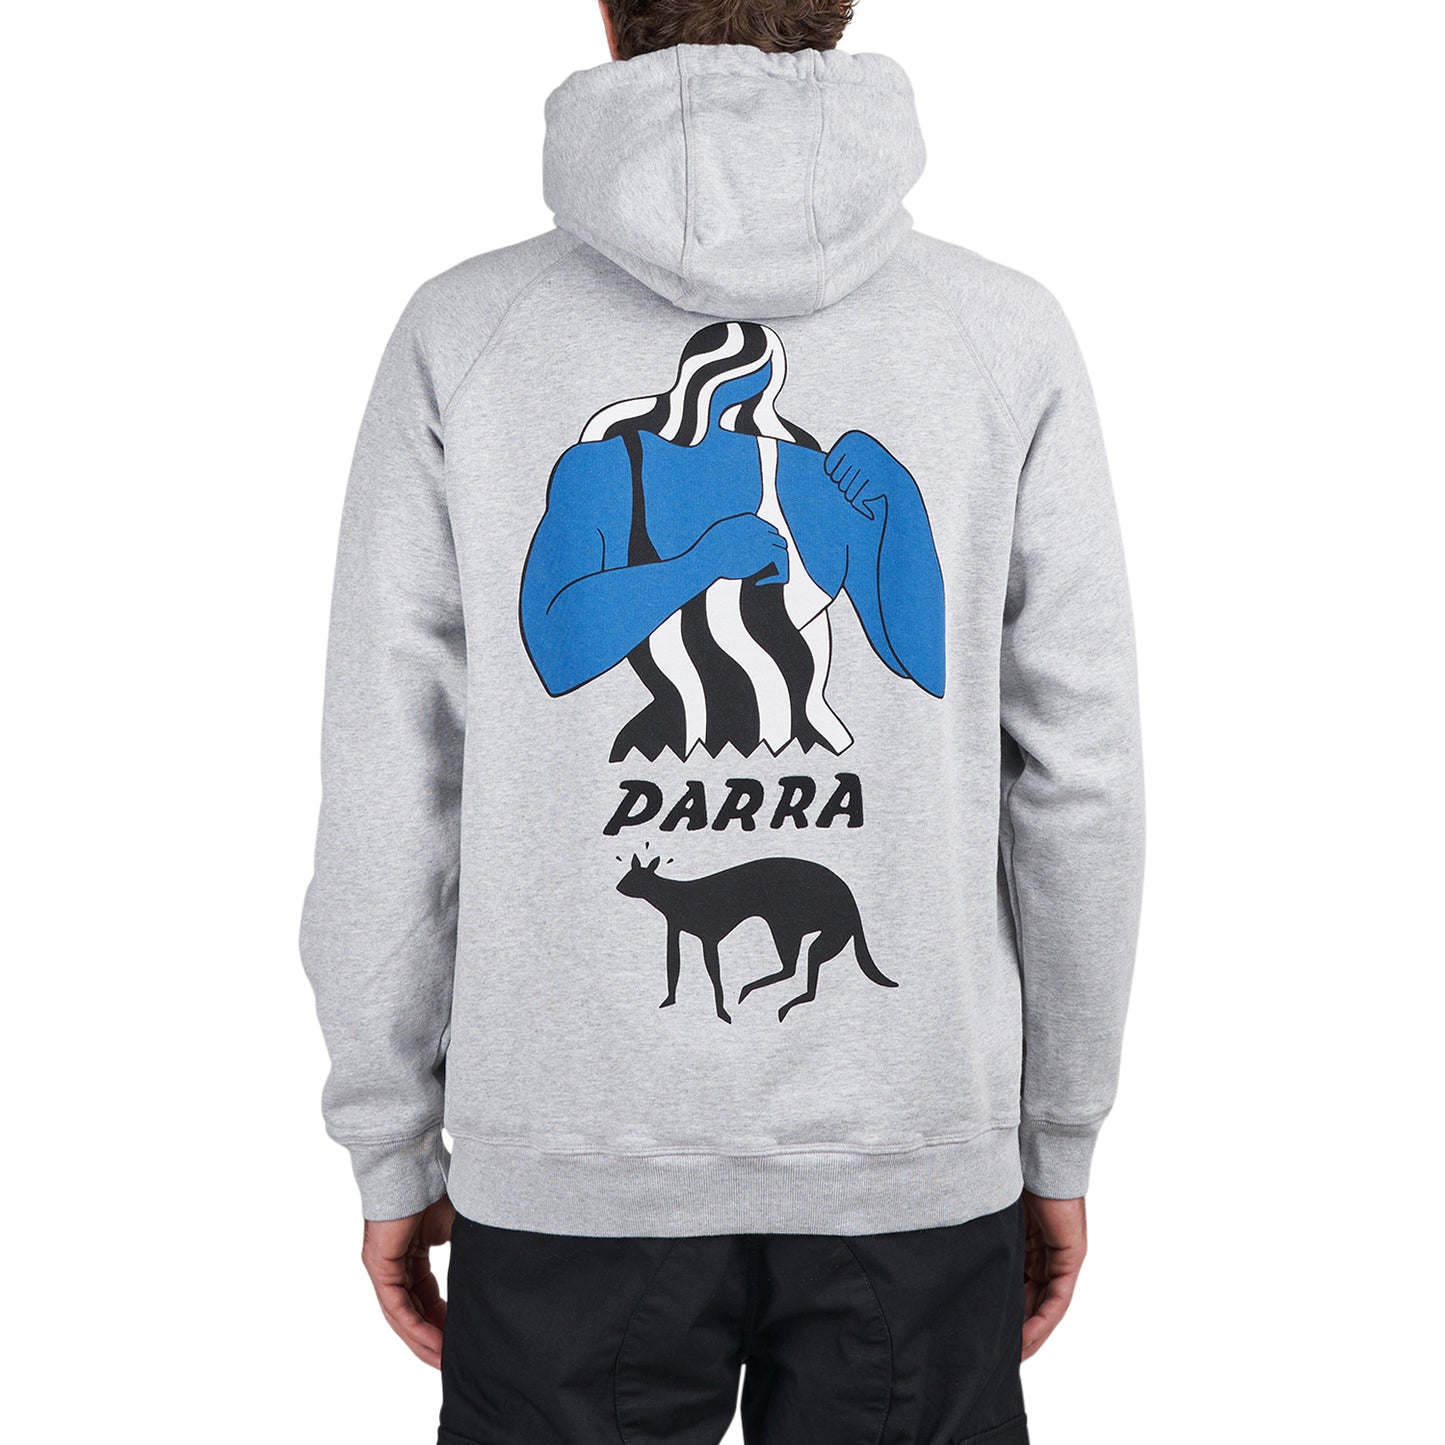 by Parra Cat Defense Hooded Sweatshirt (Grau / Multi)  - Allike Store